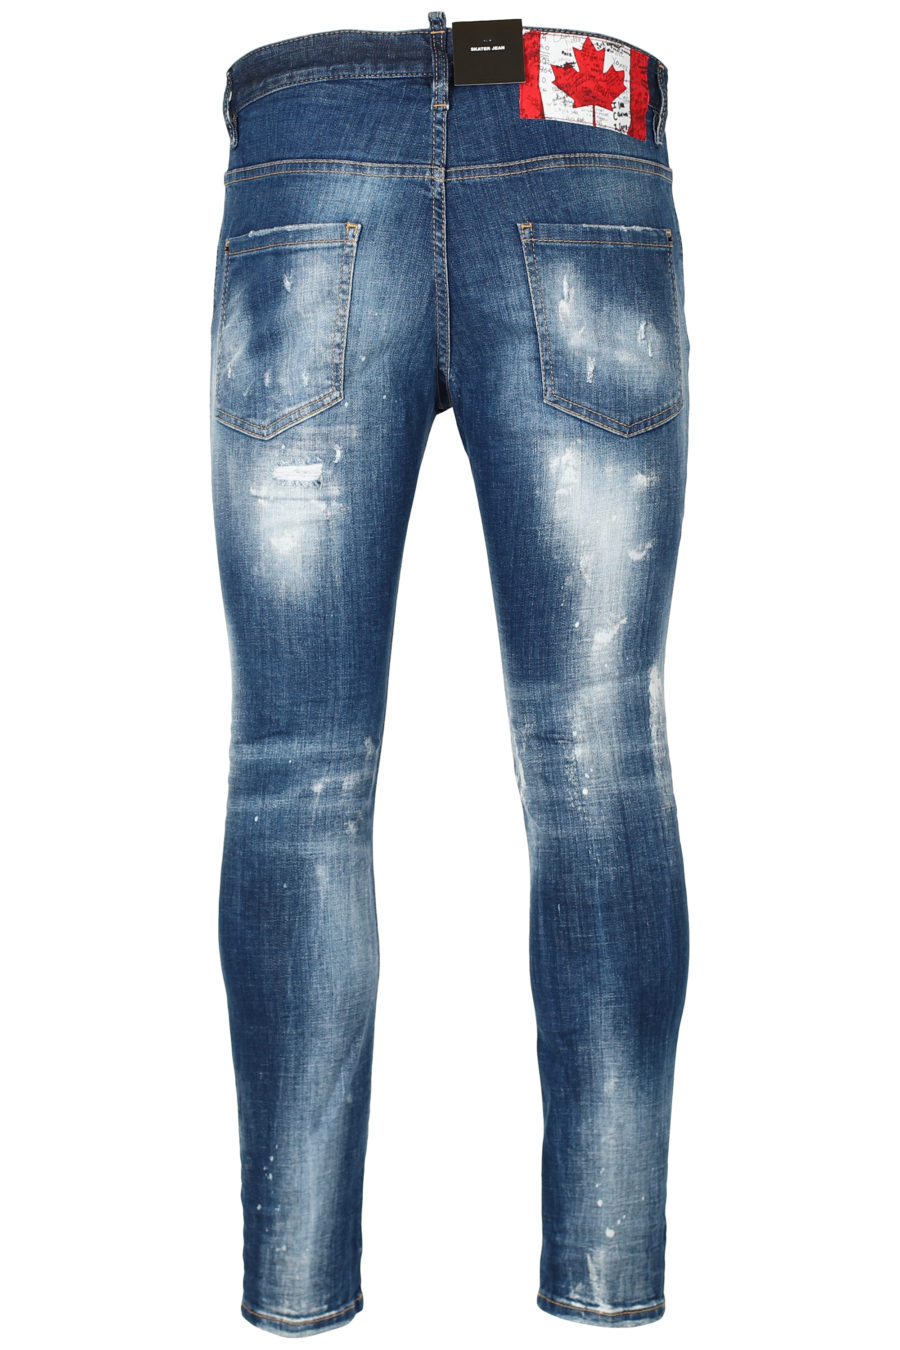 Pantalón vaquero "Skater" azul desgastado - IMG 2650